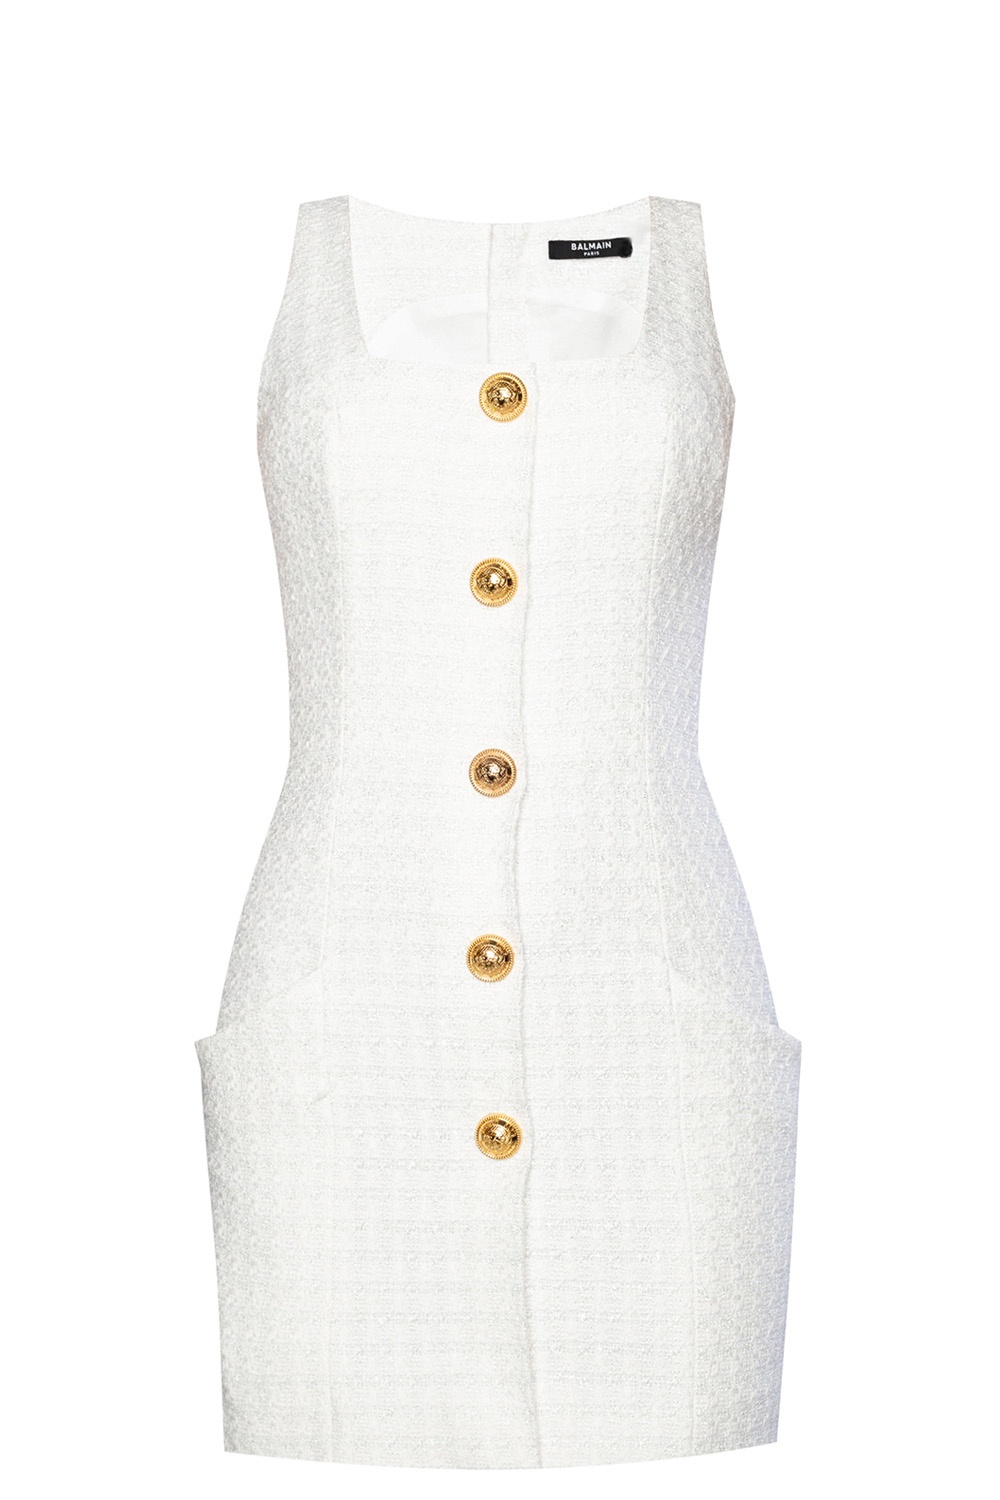 Louis Vuitton Black Short Sleeve Patch & Gold Zipper Detail Dress F 40/US 8